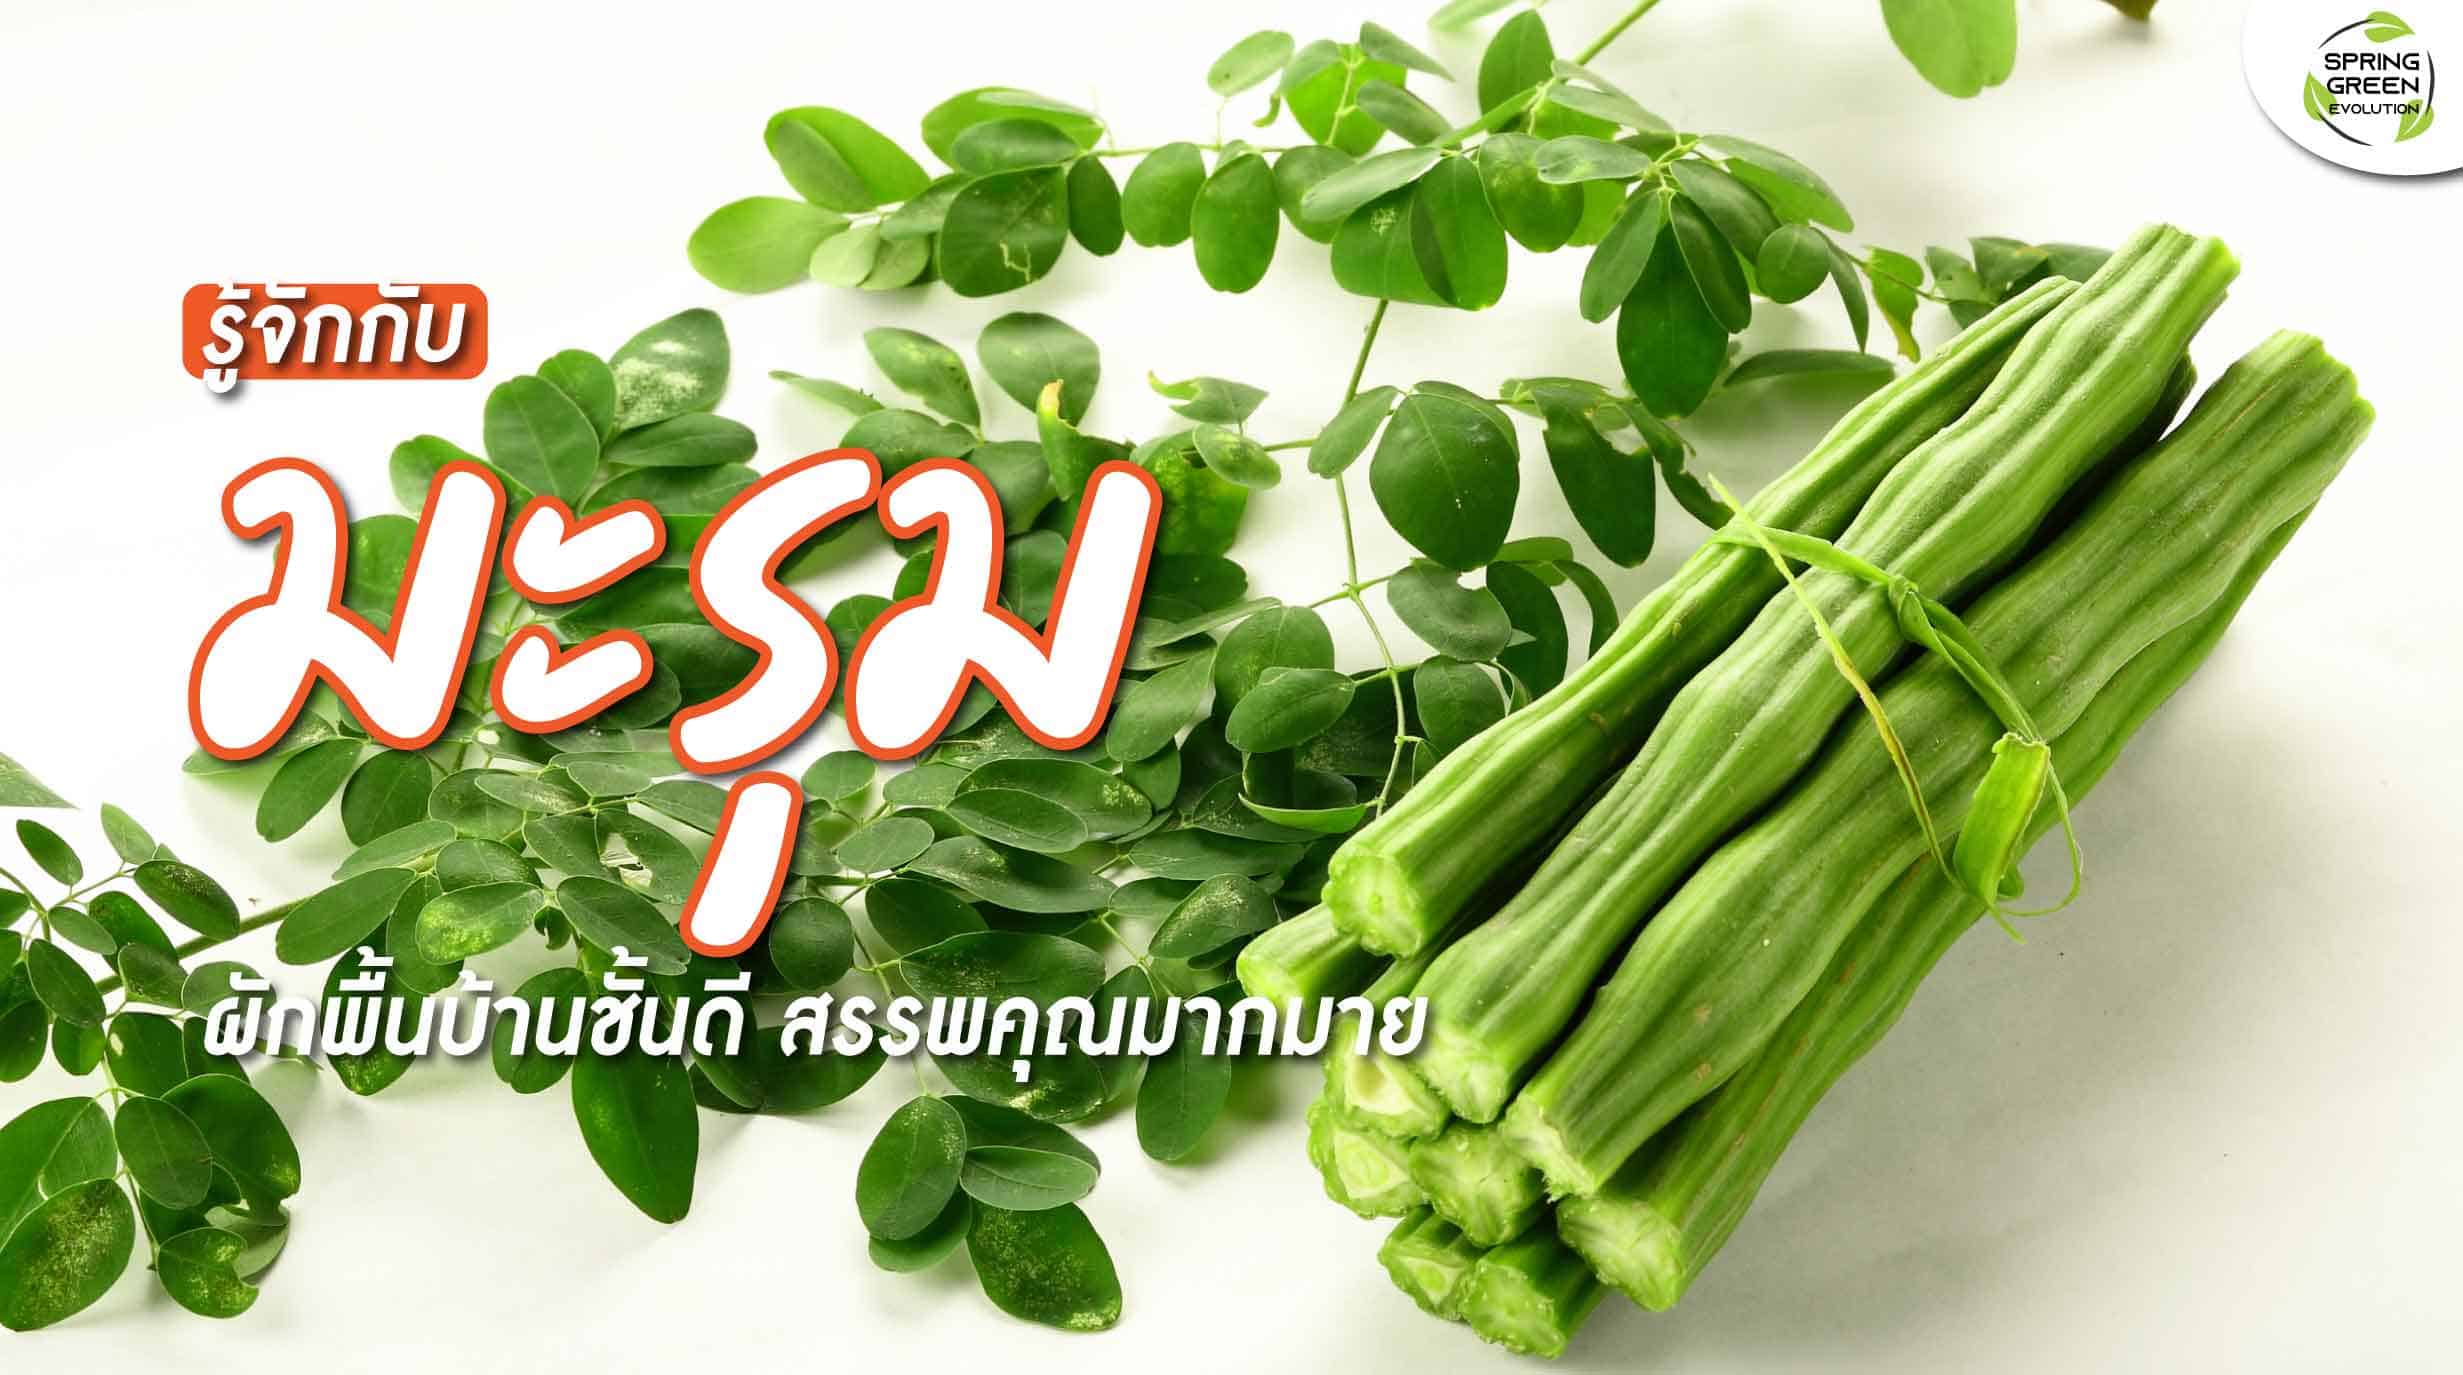 มะรุม ผักพื้นบ้านชั้นดีของไทย สรรพคุณและประโยชน์มากมาย - Sgethai